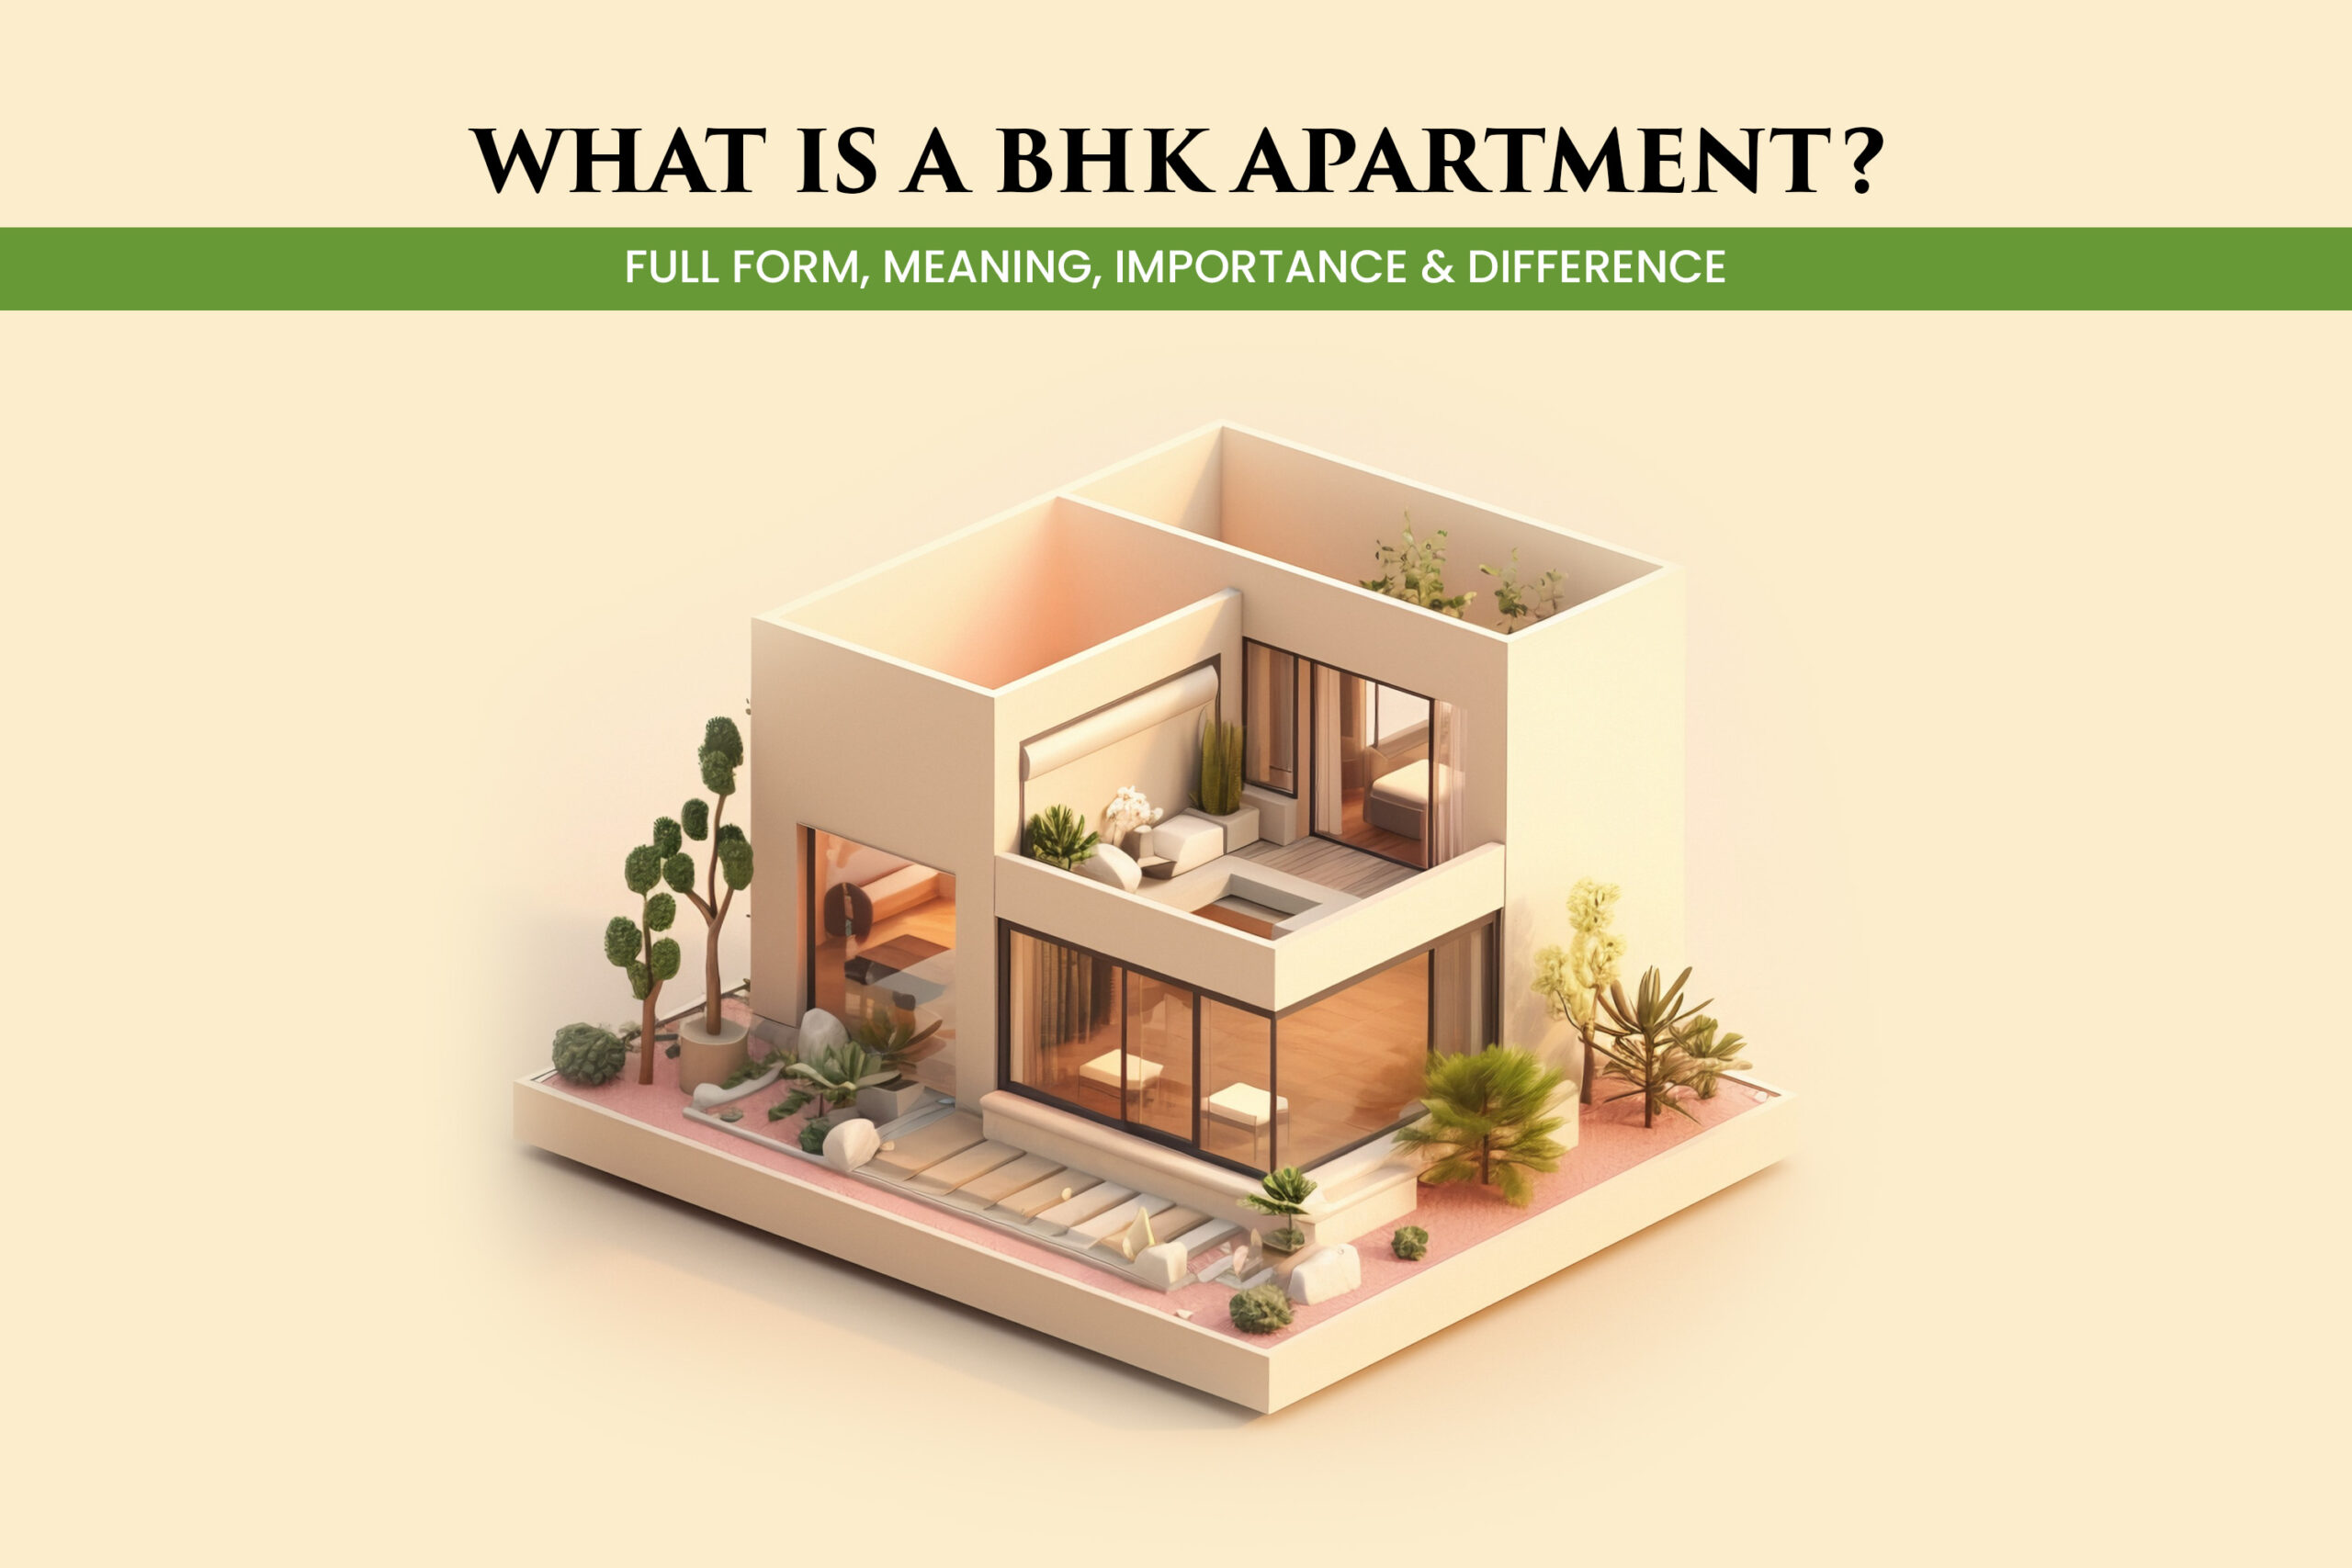 BHK apartment